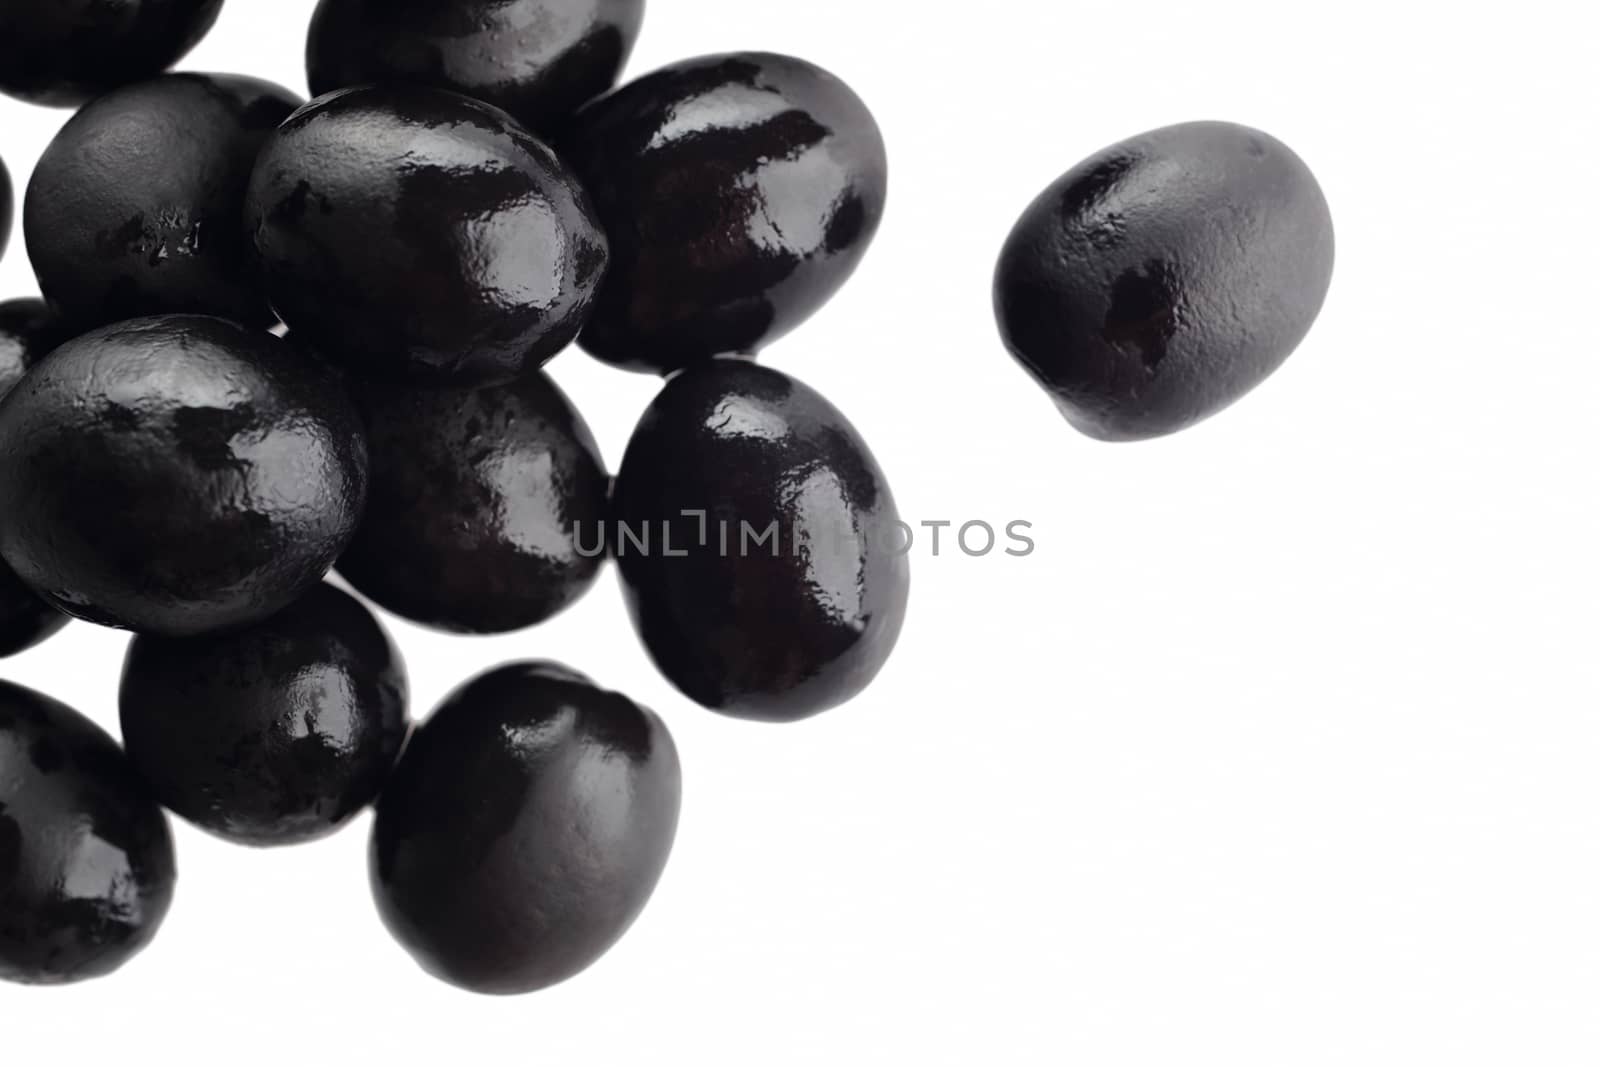 Black olives by marynamyshkovska